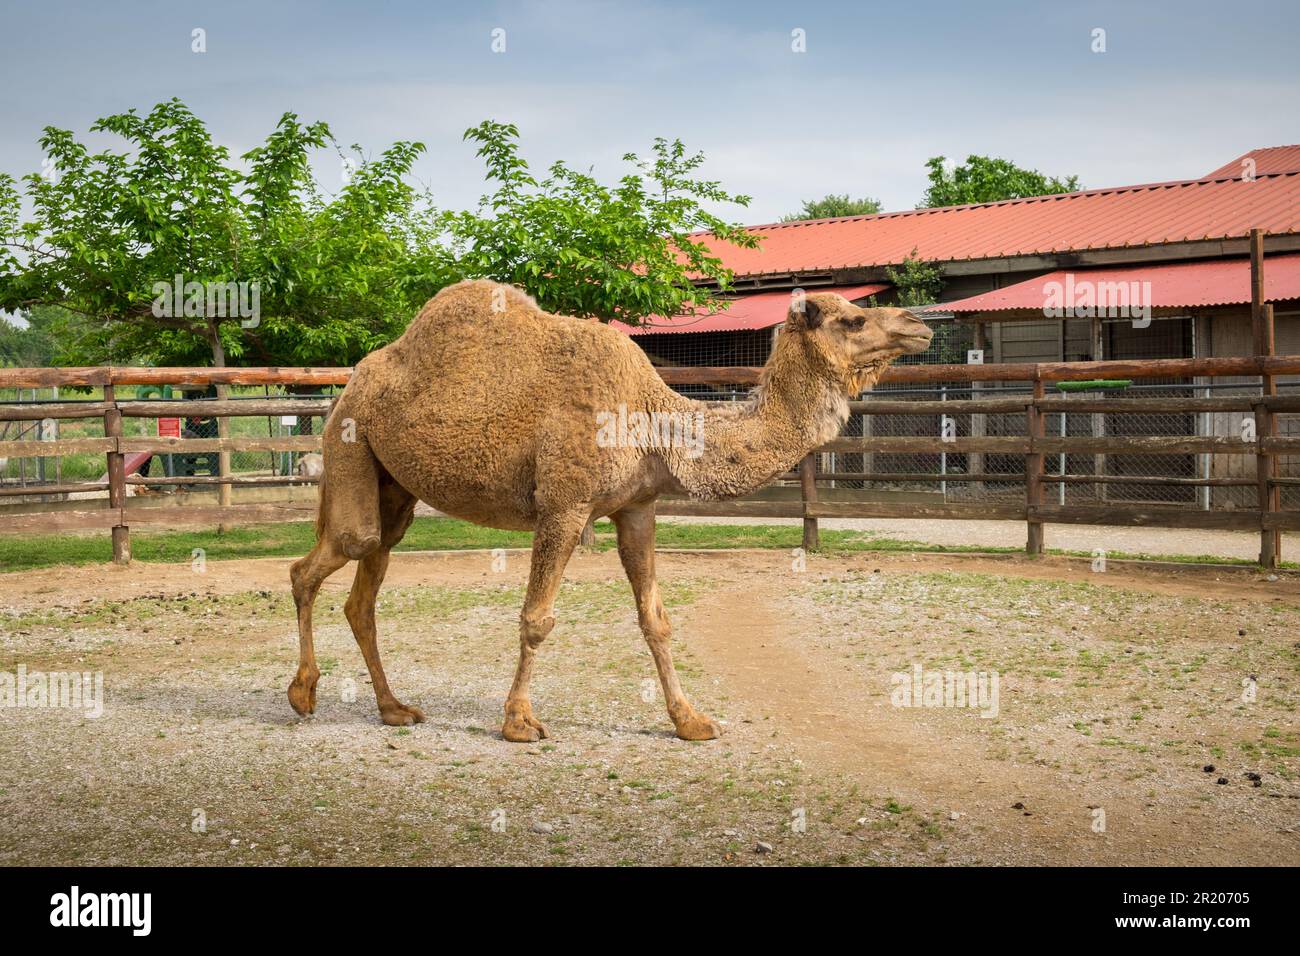 Arabian dromedary one humbed camel in a zoo.Karditsa , Greece Stock Photo